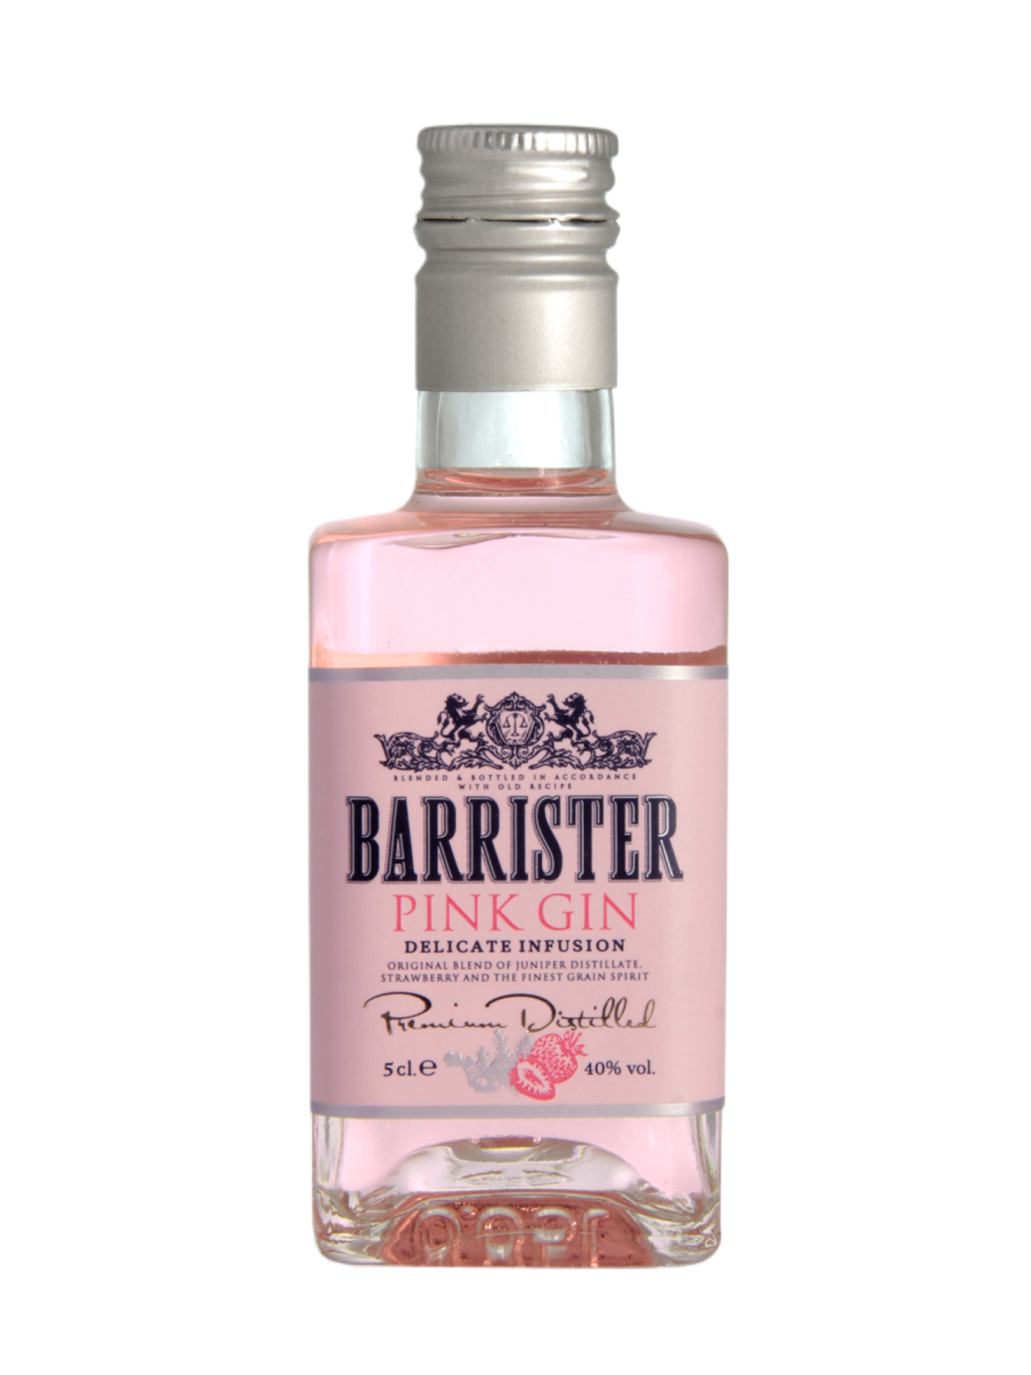 Gin 0.7. Джин Barrister Pink Gin 40%. Джин Барристер Пинк 40% 0,7л. Джин Барристер Пинк 0,7. Джин Barrister Pink 0.7 40.